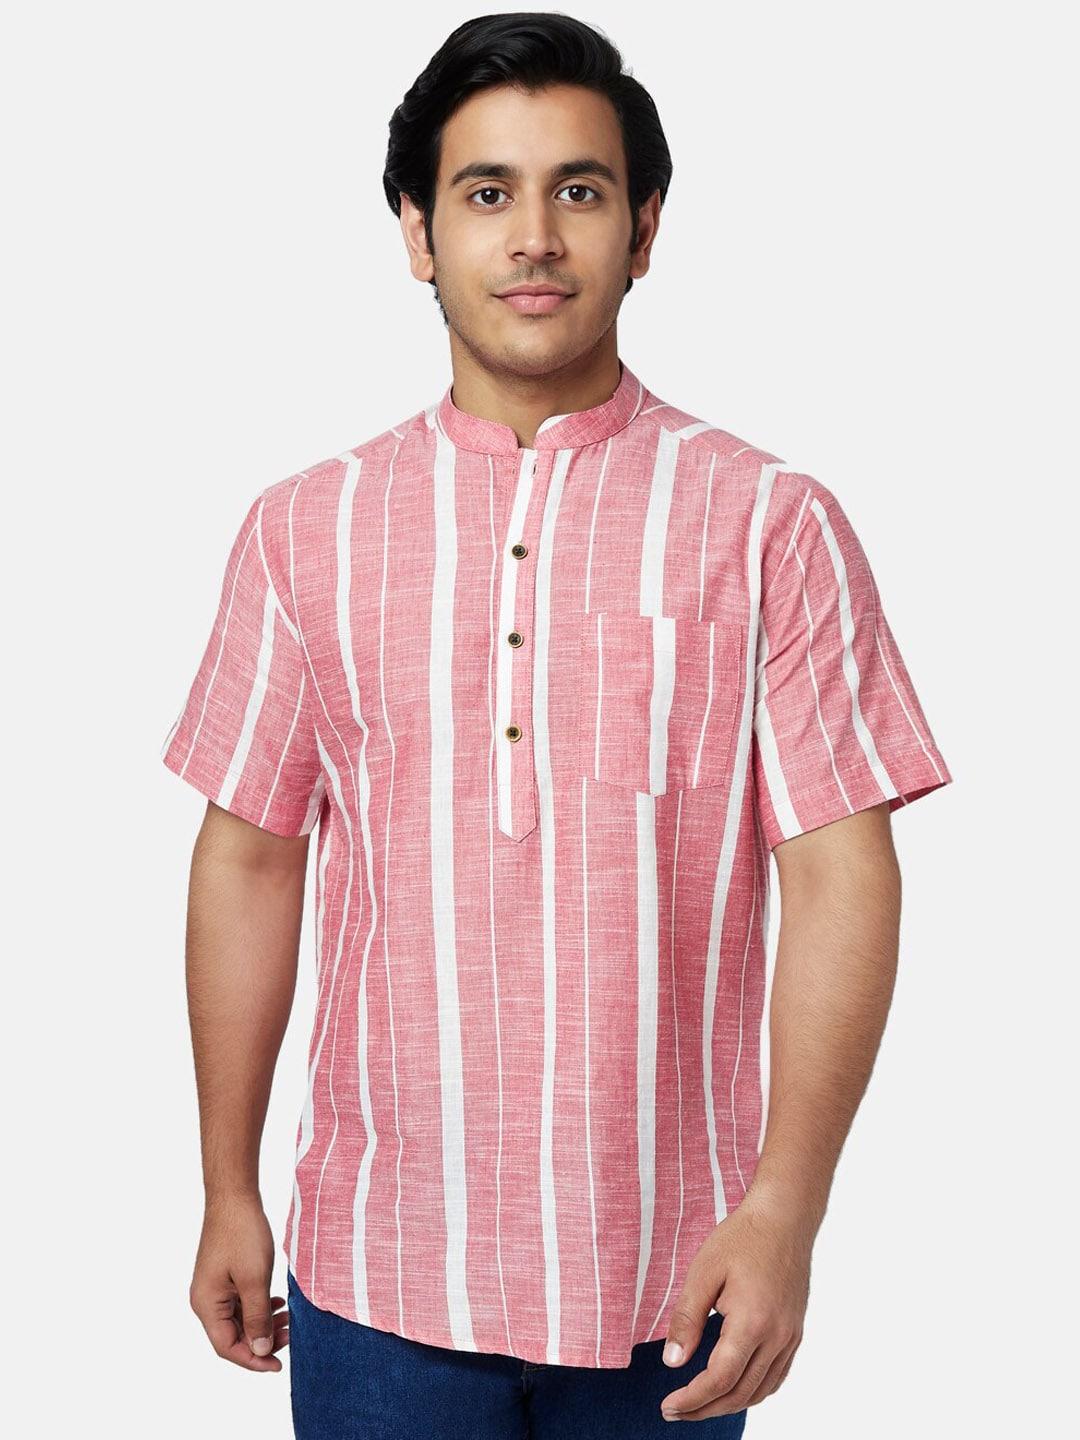 yu by pantaloons men pink & white striped cotton kurta